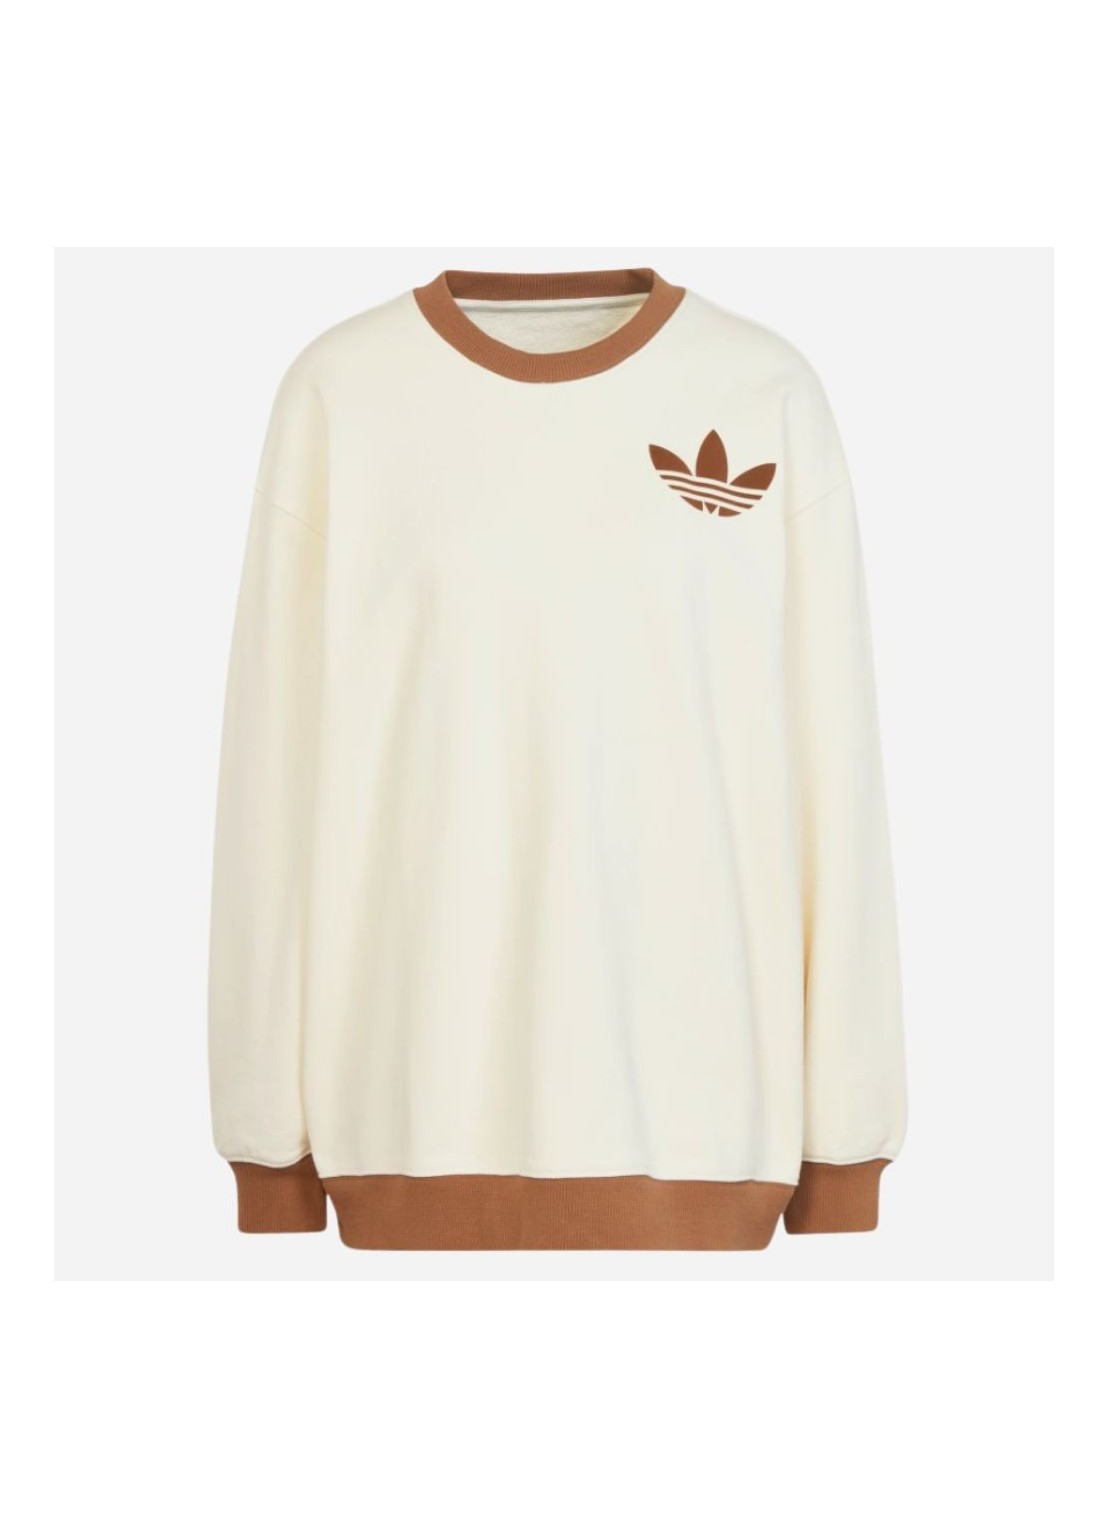 adidas originals sweatshirt cwhite - ib2040 beige 32